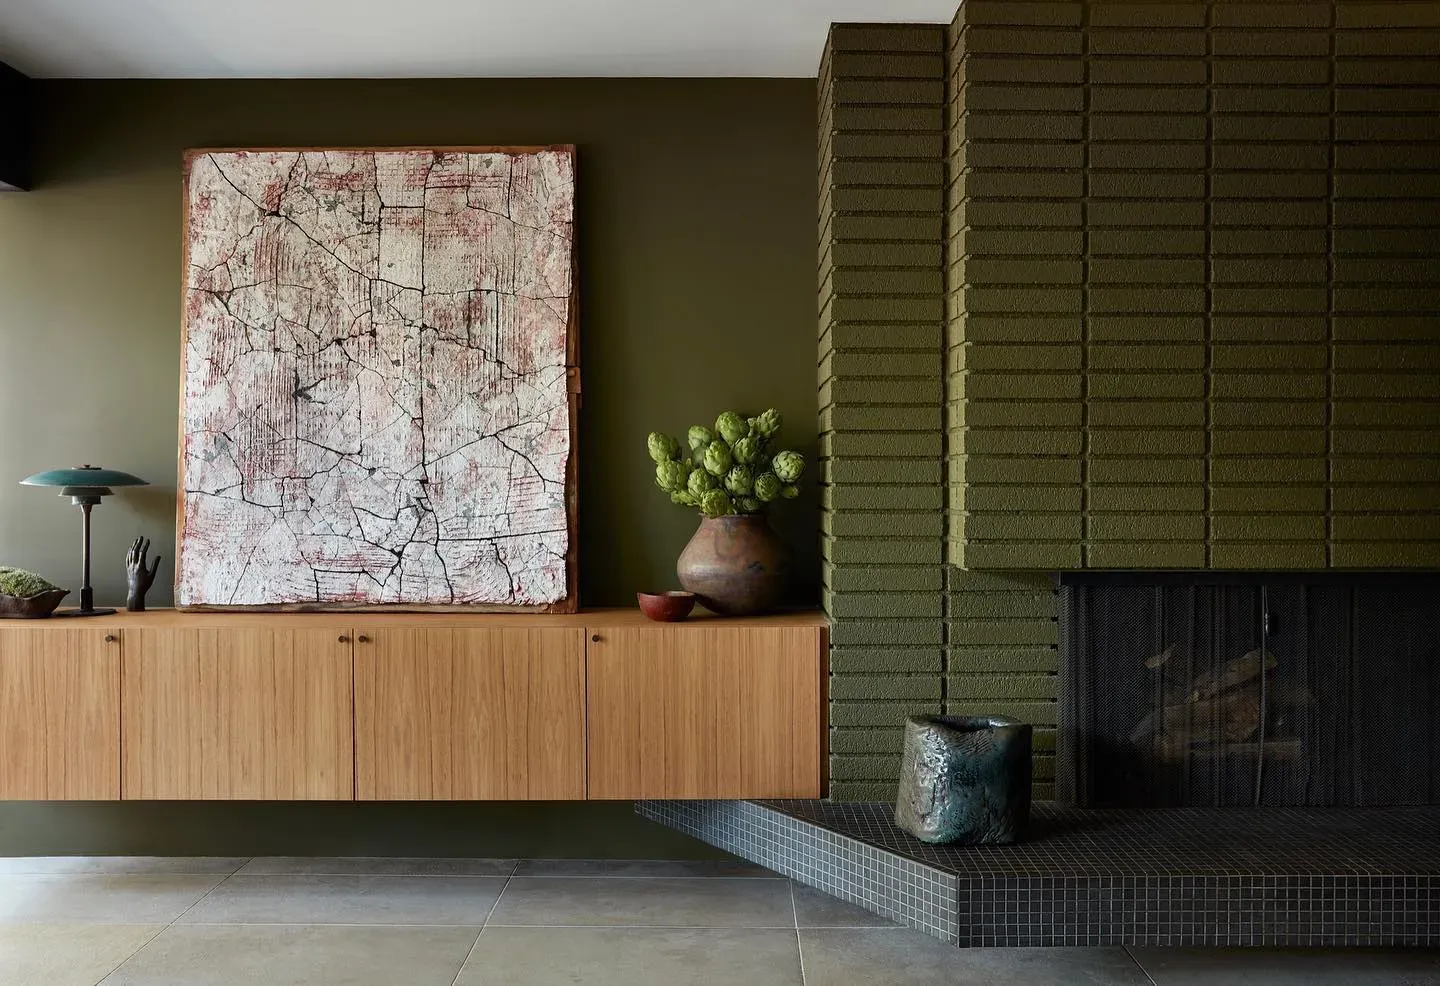 Benjamin Moore Turtle Green living room inspiration